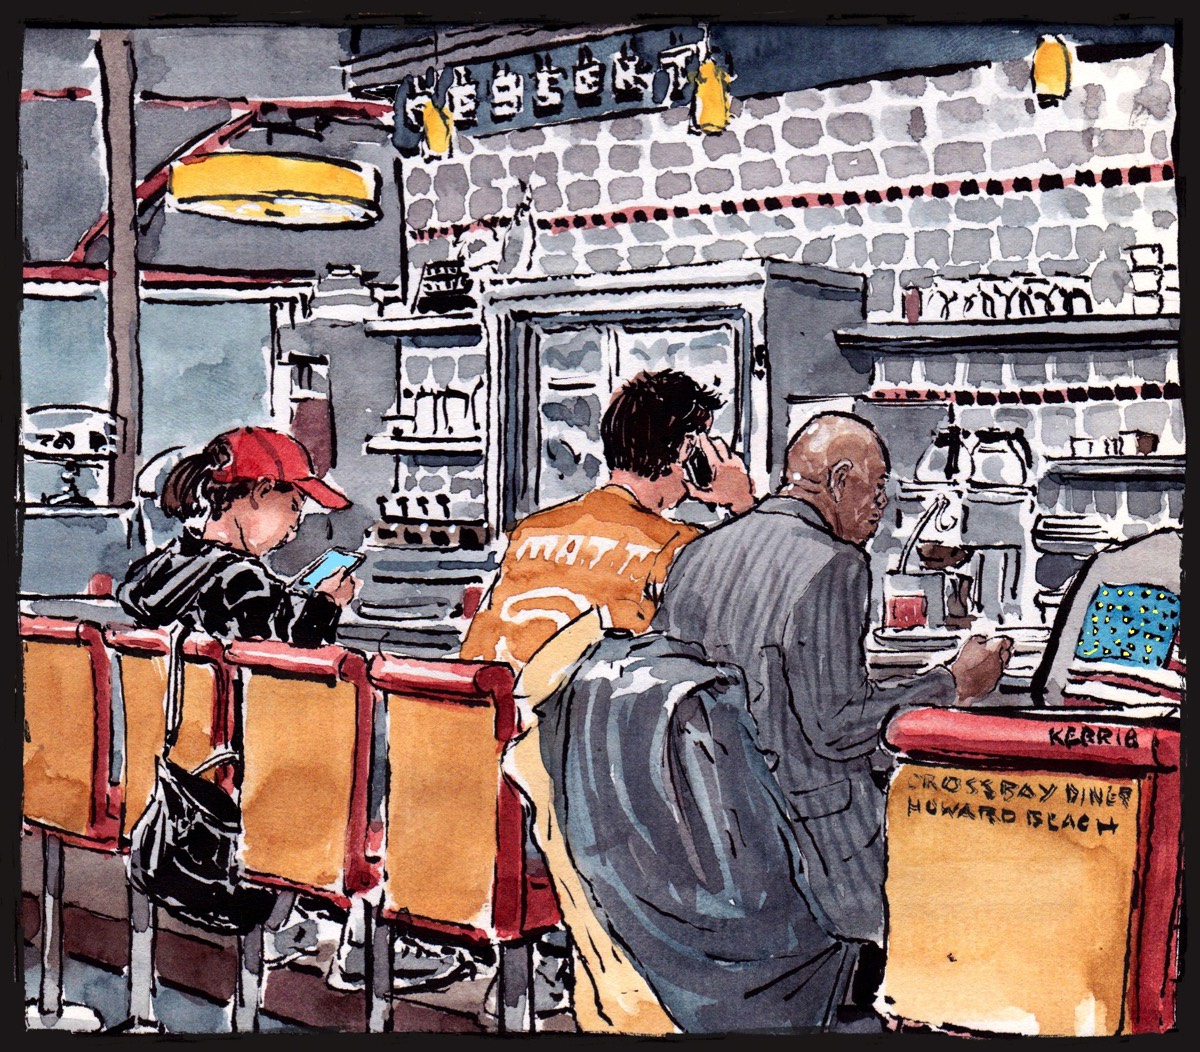 Crossbay Diner • Brushpen & Watercolor